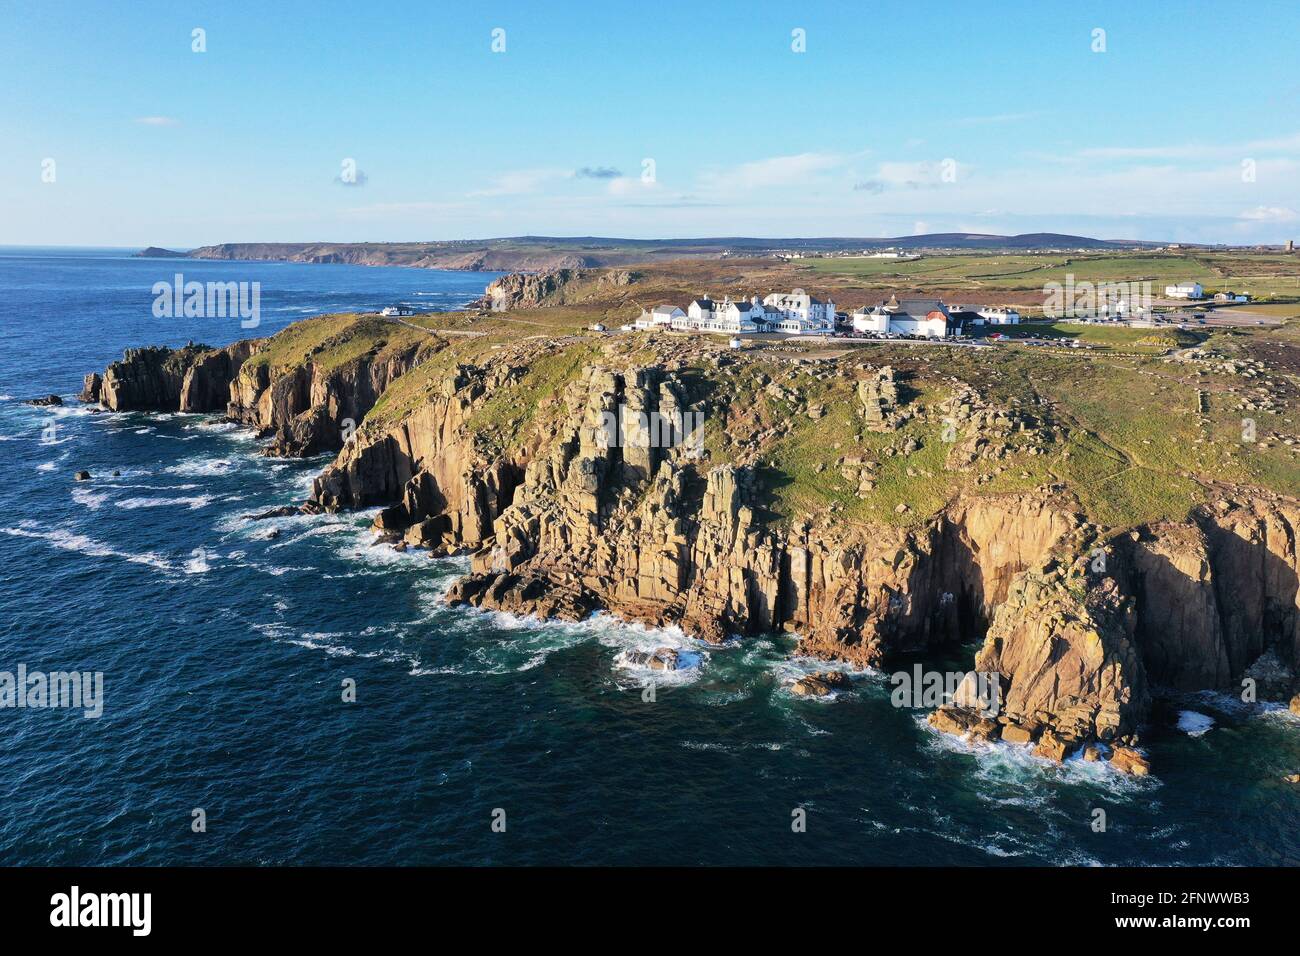 Belle vue aérienne des terres à la fin de Cornwall avec l'océan, les falaises et la côte sauvage lors d'une journée ensoleillée Banque D'Images